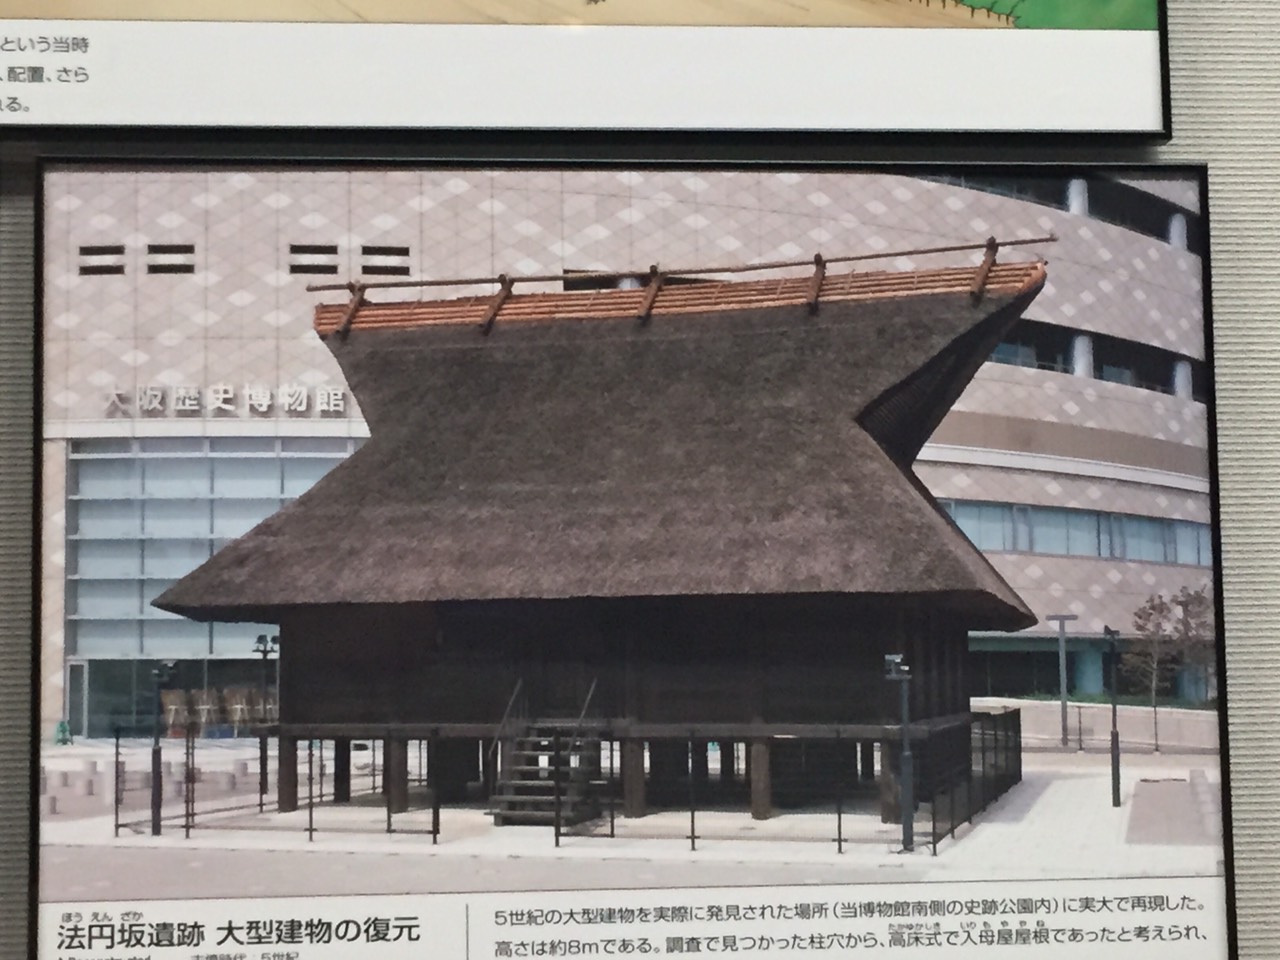 การเดินทางไปศึกษาดูงานและเยี่ยมชมพิพิธภัณฑ์เรือนโบราณ ณ ประเทศญี่ปุ่น